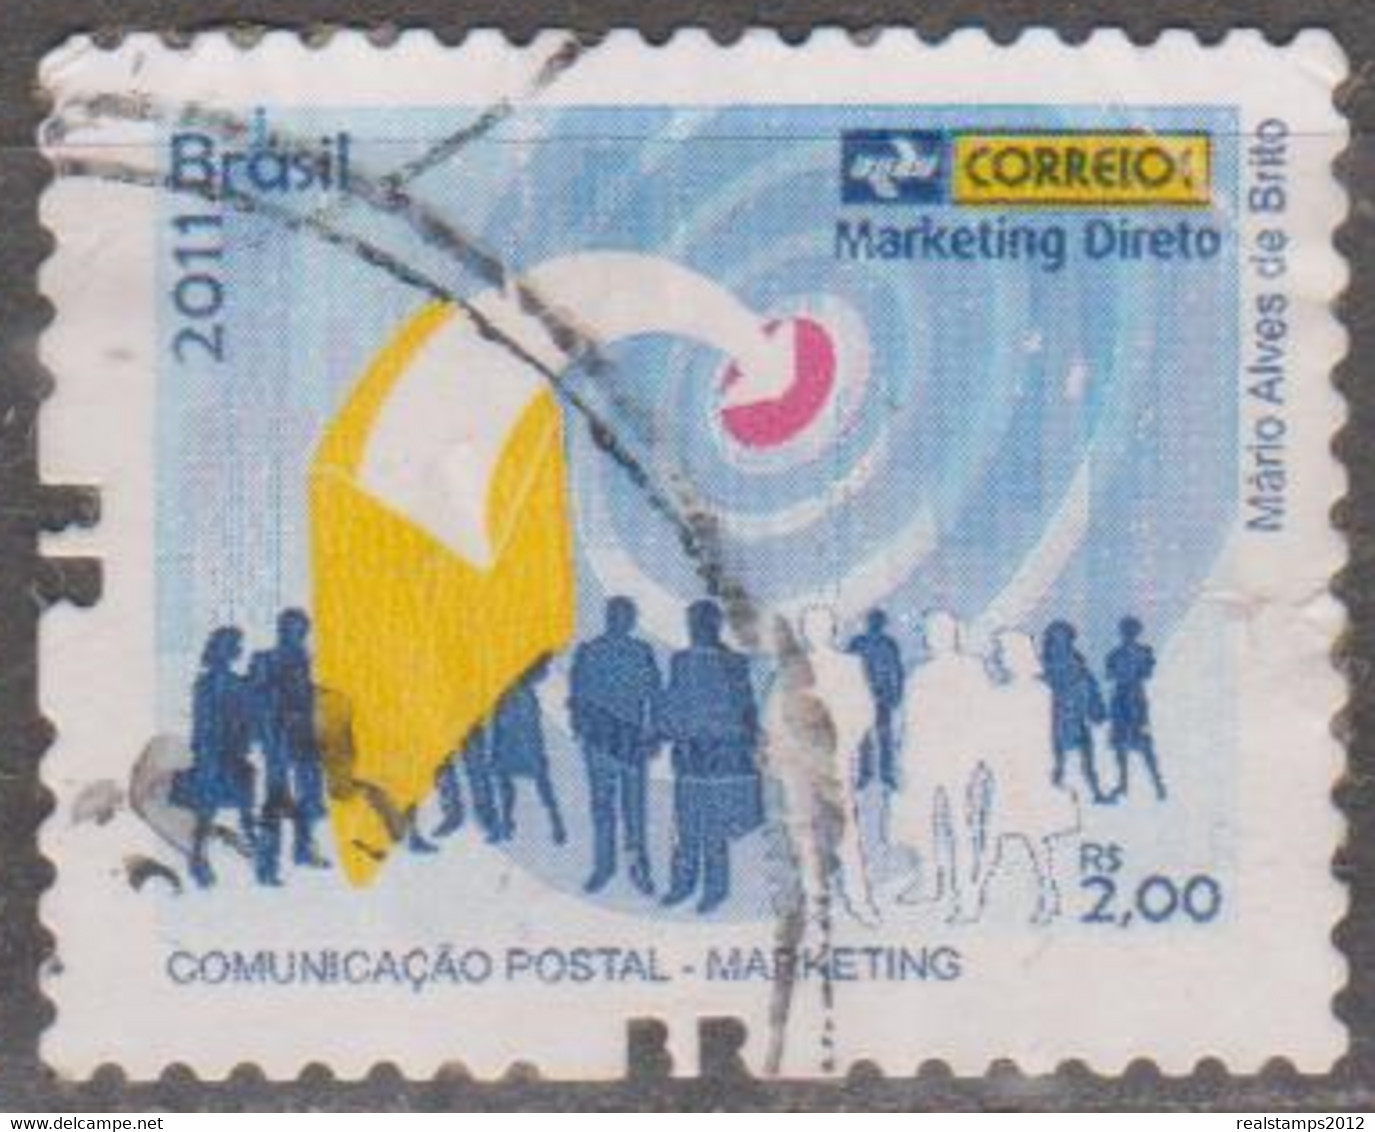 Brasil - 2011 - Comunicação Postal - Marketing   - Marketing Direto  R$ 2,00 (o)  RHM Nº - Gebruikt